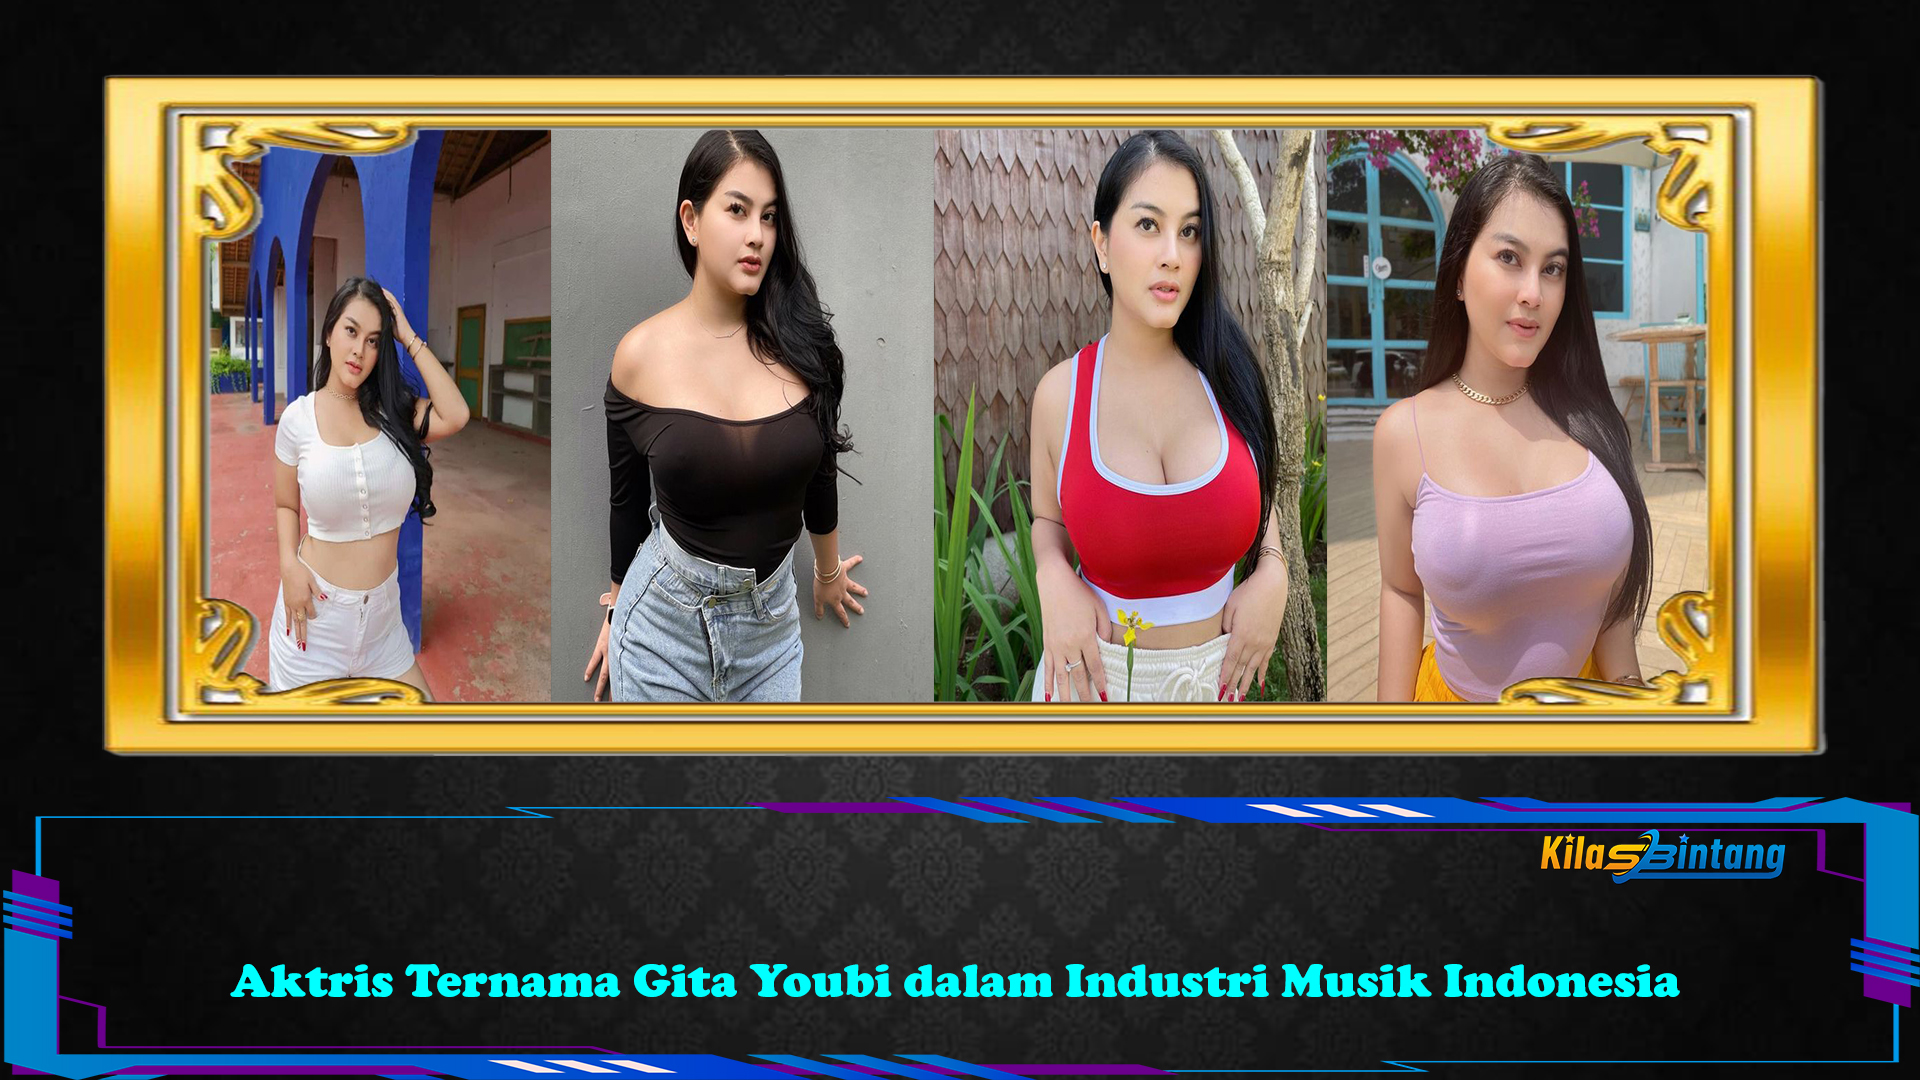 Aktris Ternama Gita Youbi dalam Industri Musik Indonesia